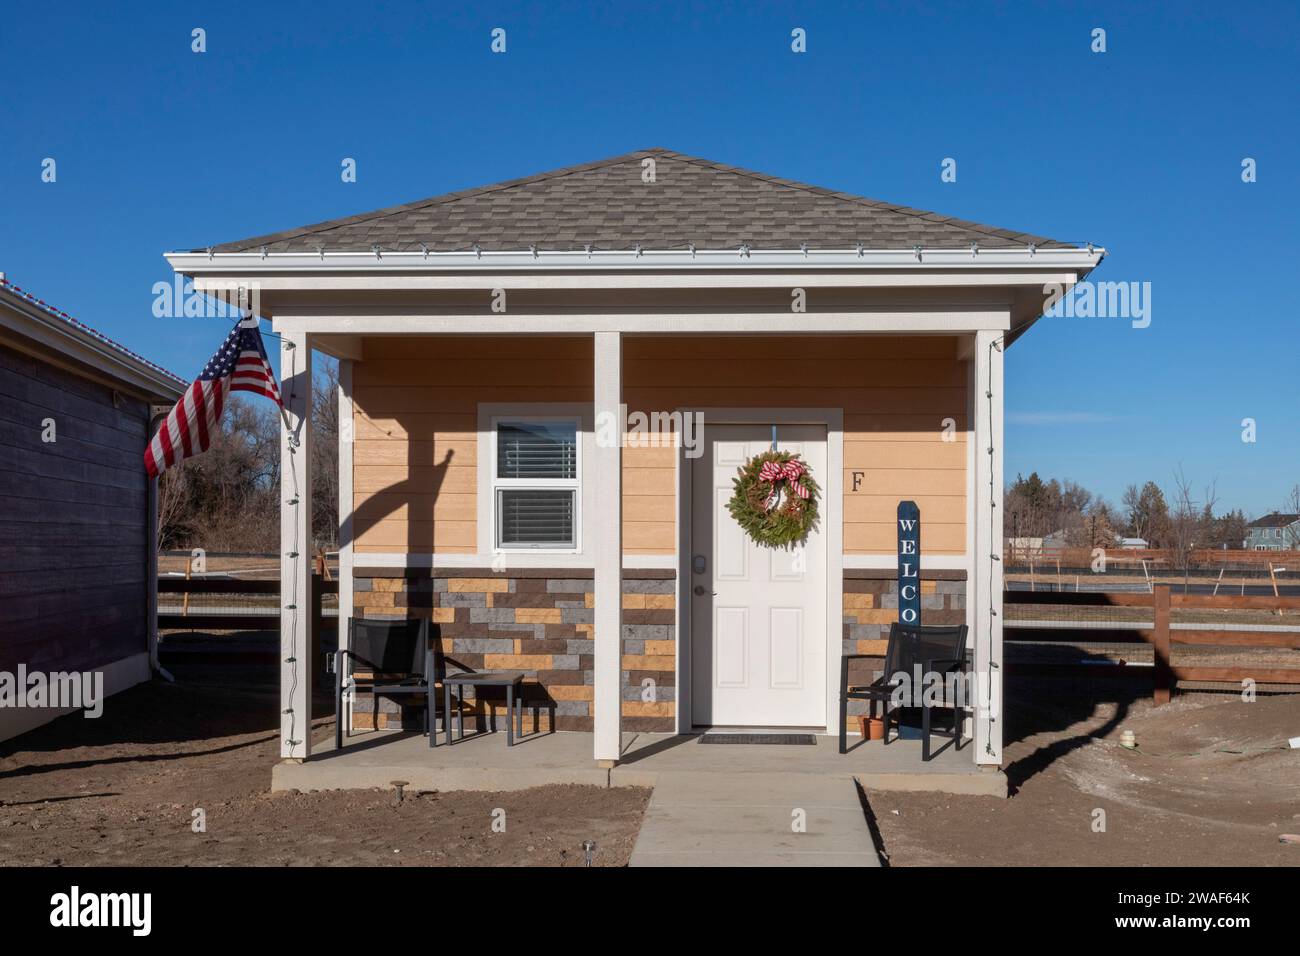 Longmont, Colorado - il Veterans Community Project sta costruendo piccole case per veterani senza tetto. Lo sviluppo ha 26 case, che vanno da 240 squar Foto Stock